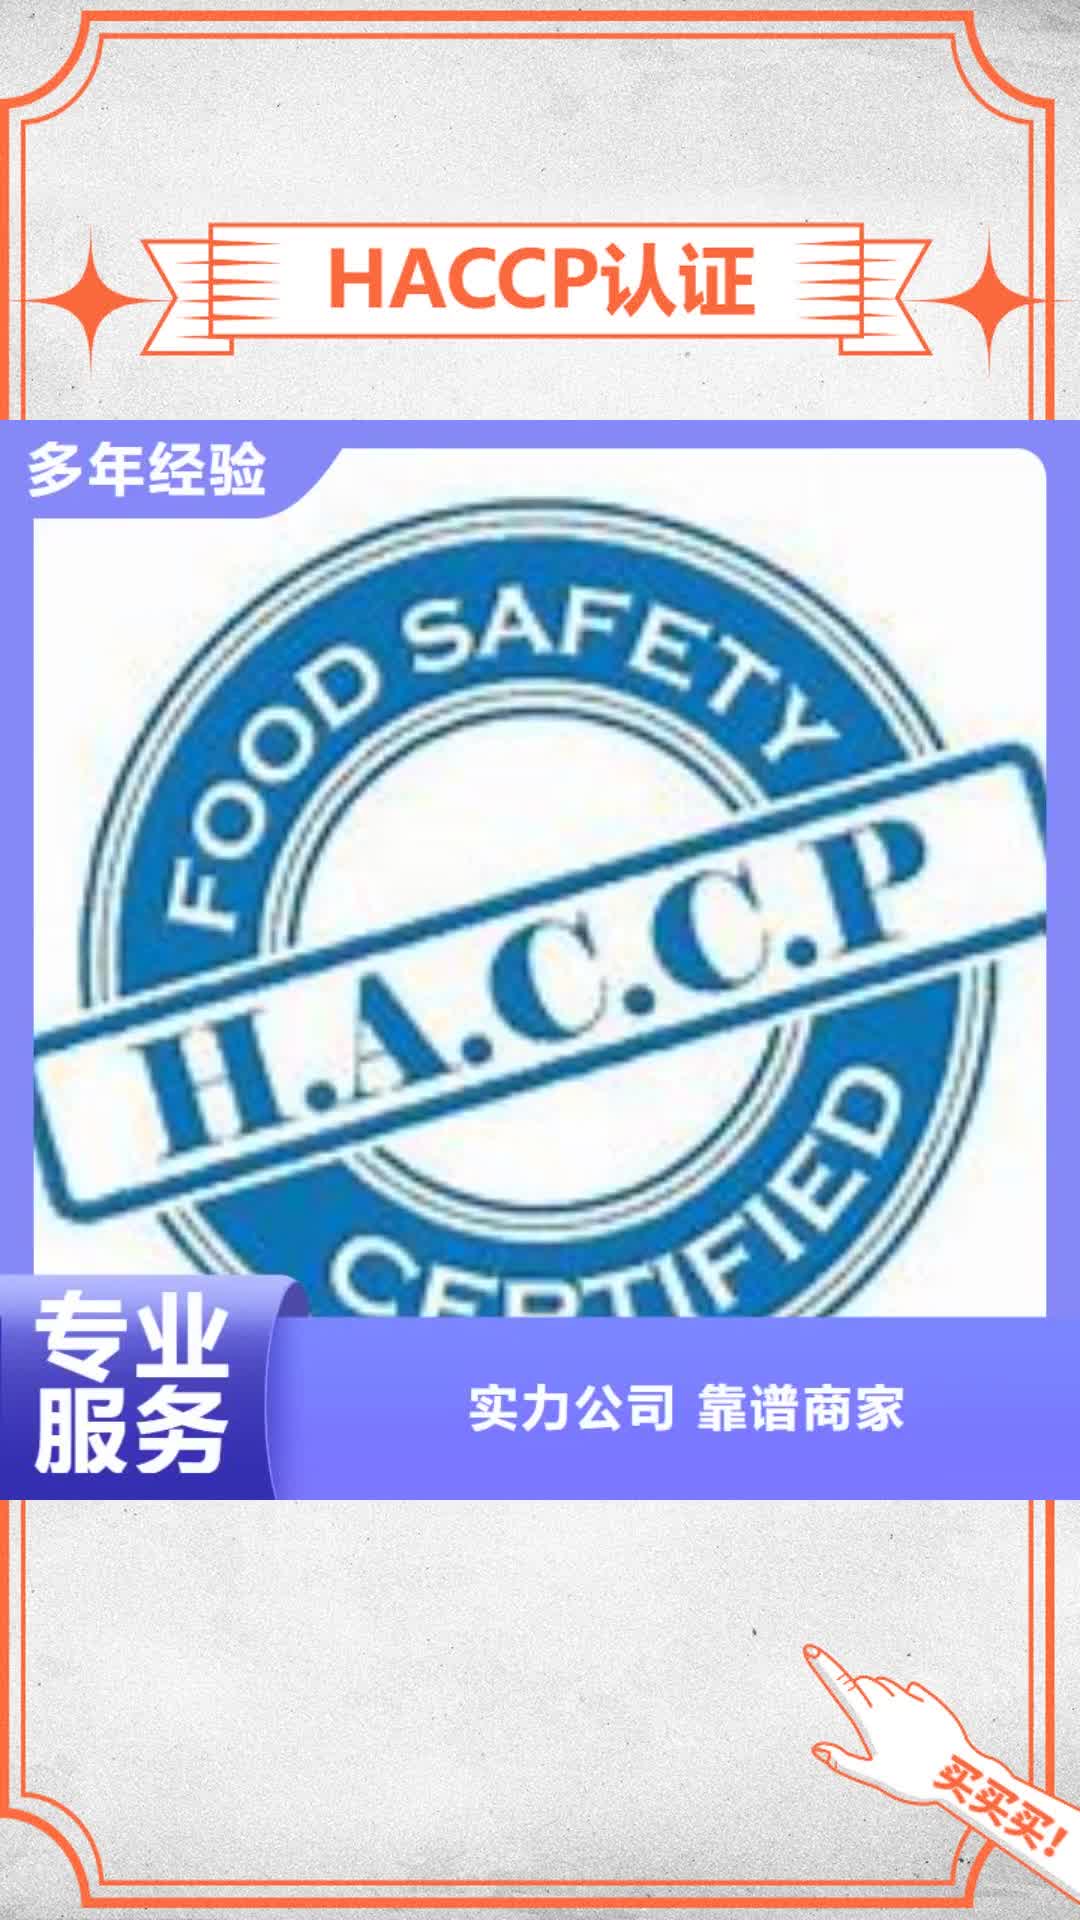 【台湾 HACCP认证 ISO13485认证实力团队】